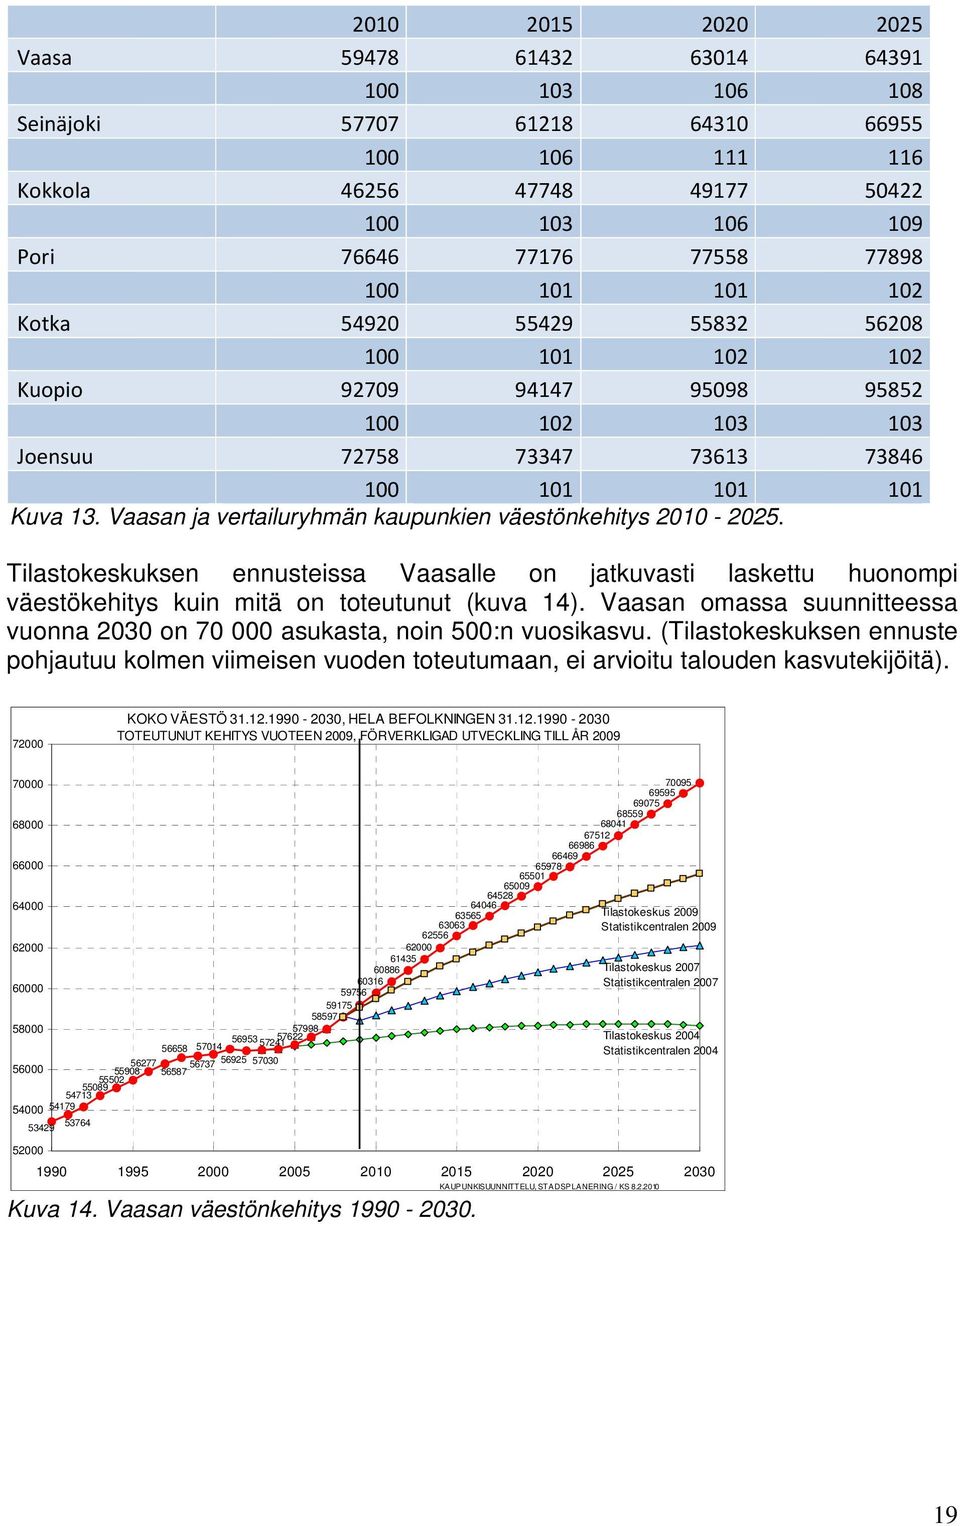 Vaasan ja vertailuryhmän kaupunkien väestönkehitys 2010-2025. Tilastokeskuksen ennusteissa Vaasalle on jatkuvasti laskettu huonompi väestökehitys kuin mitä on toteutunut (kuva 14).